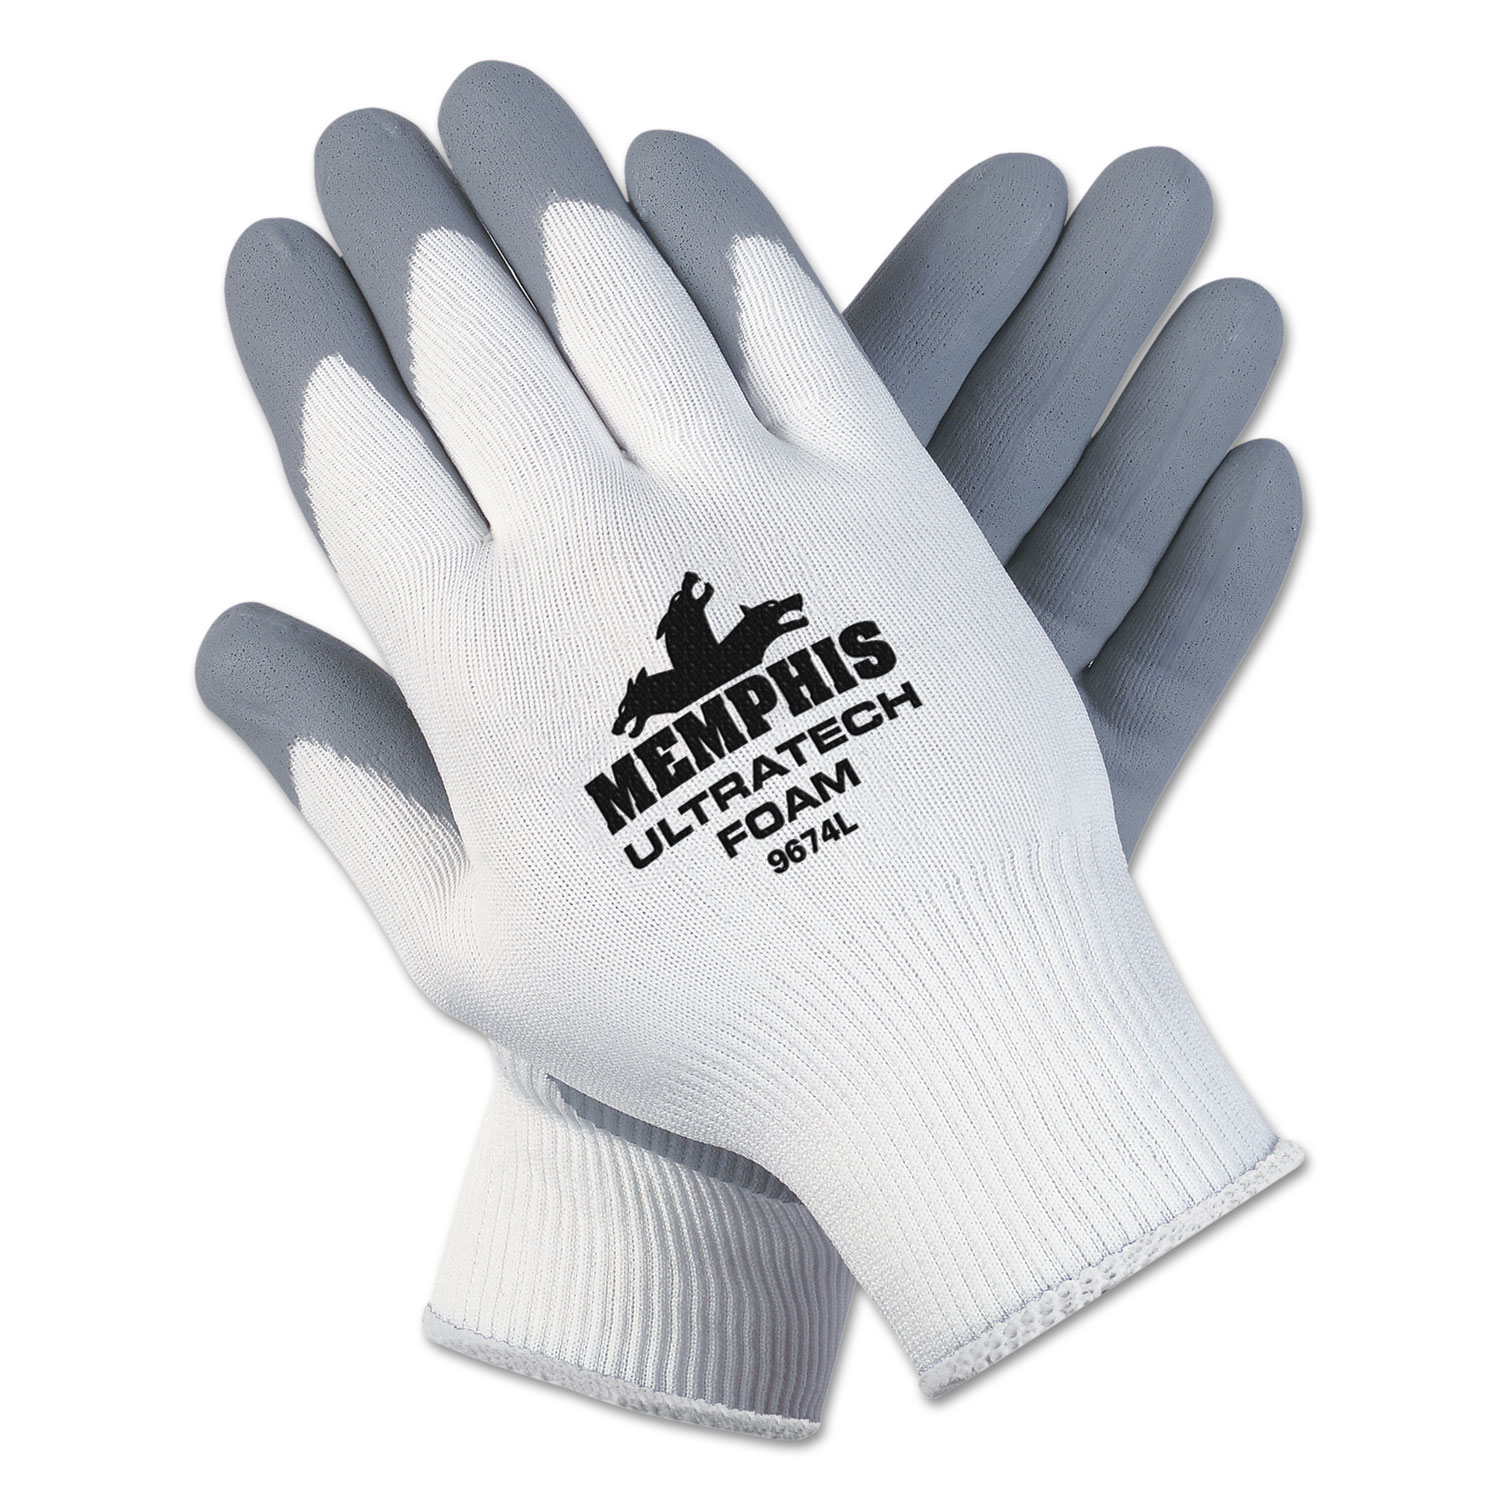  MCR Safety 9674L Ultra Tech Foam Seamless Nylon Knit Gloves, Large, White/Gray, 12 Pair/Dozen (CRW9674L) 